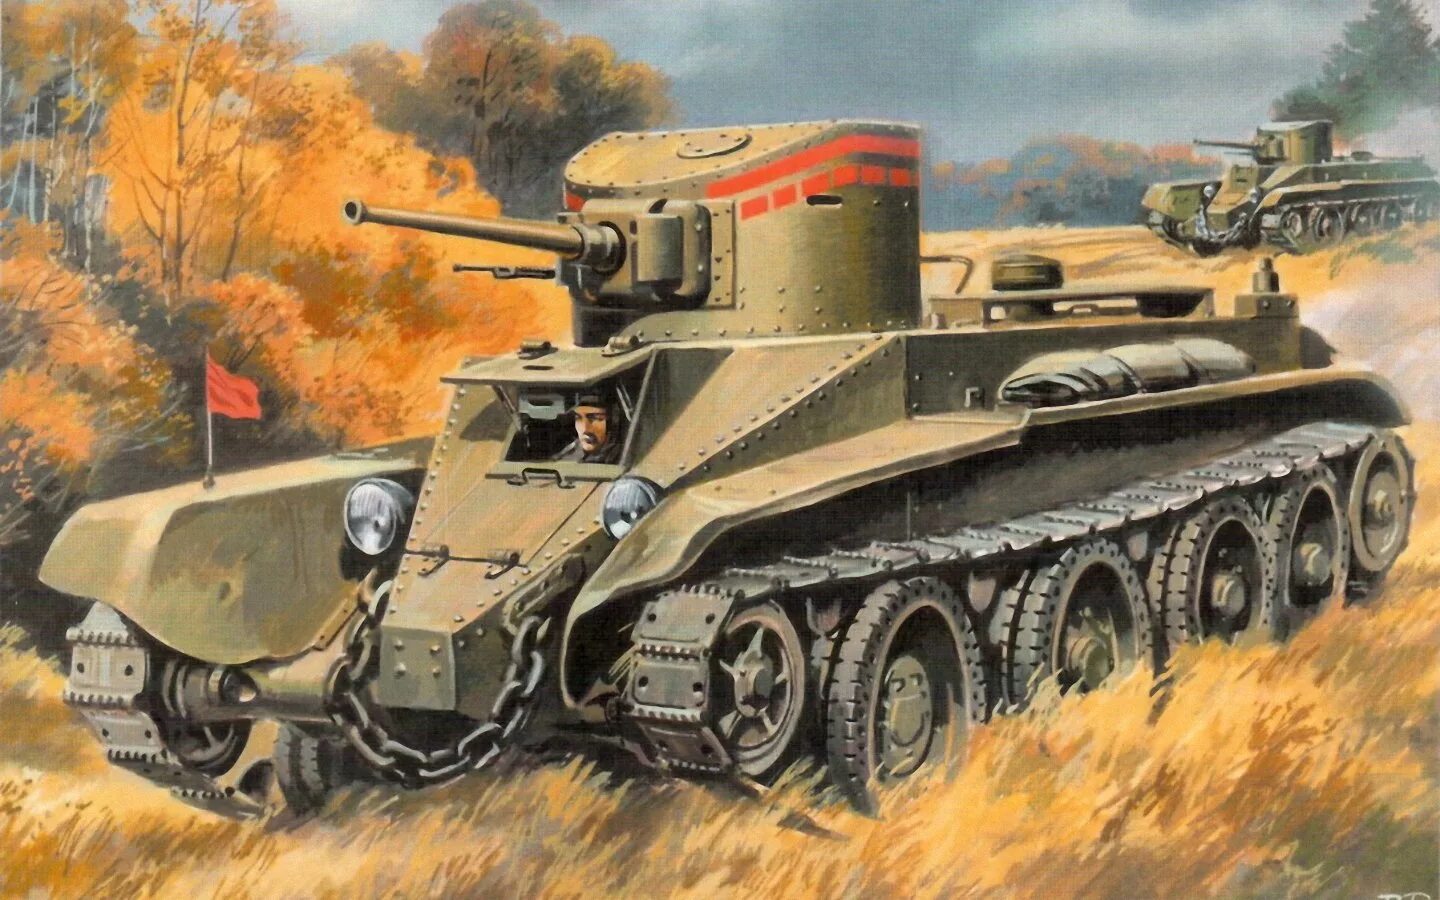 Легкие танки бт. Танк БТ-2. Танк СССР БТ 2. Советский лёгкий колёсно-гусеничный танк БТ-2. БТ-1 танк.